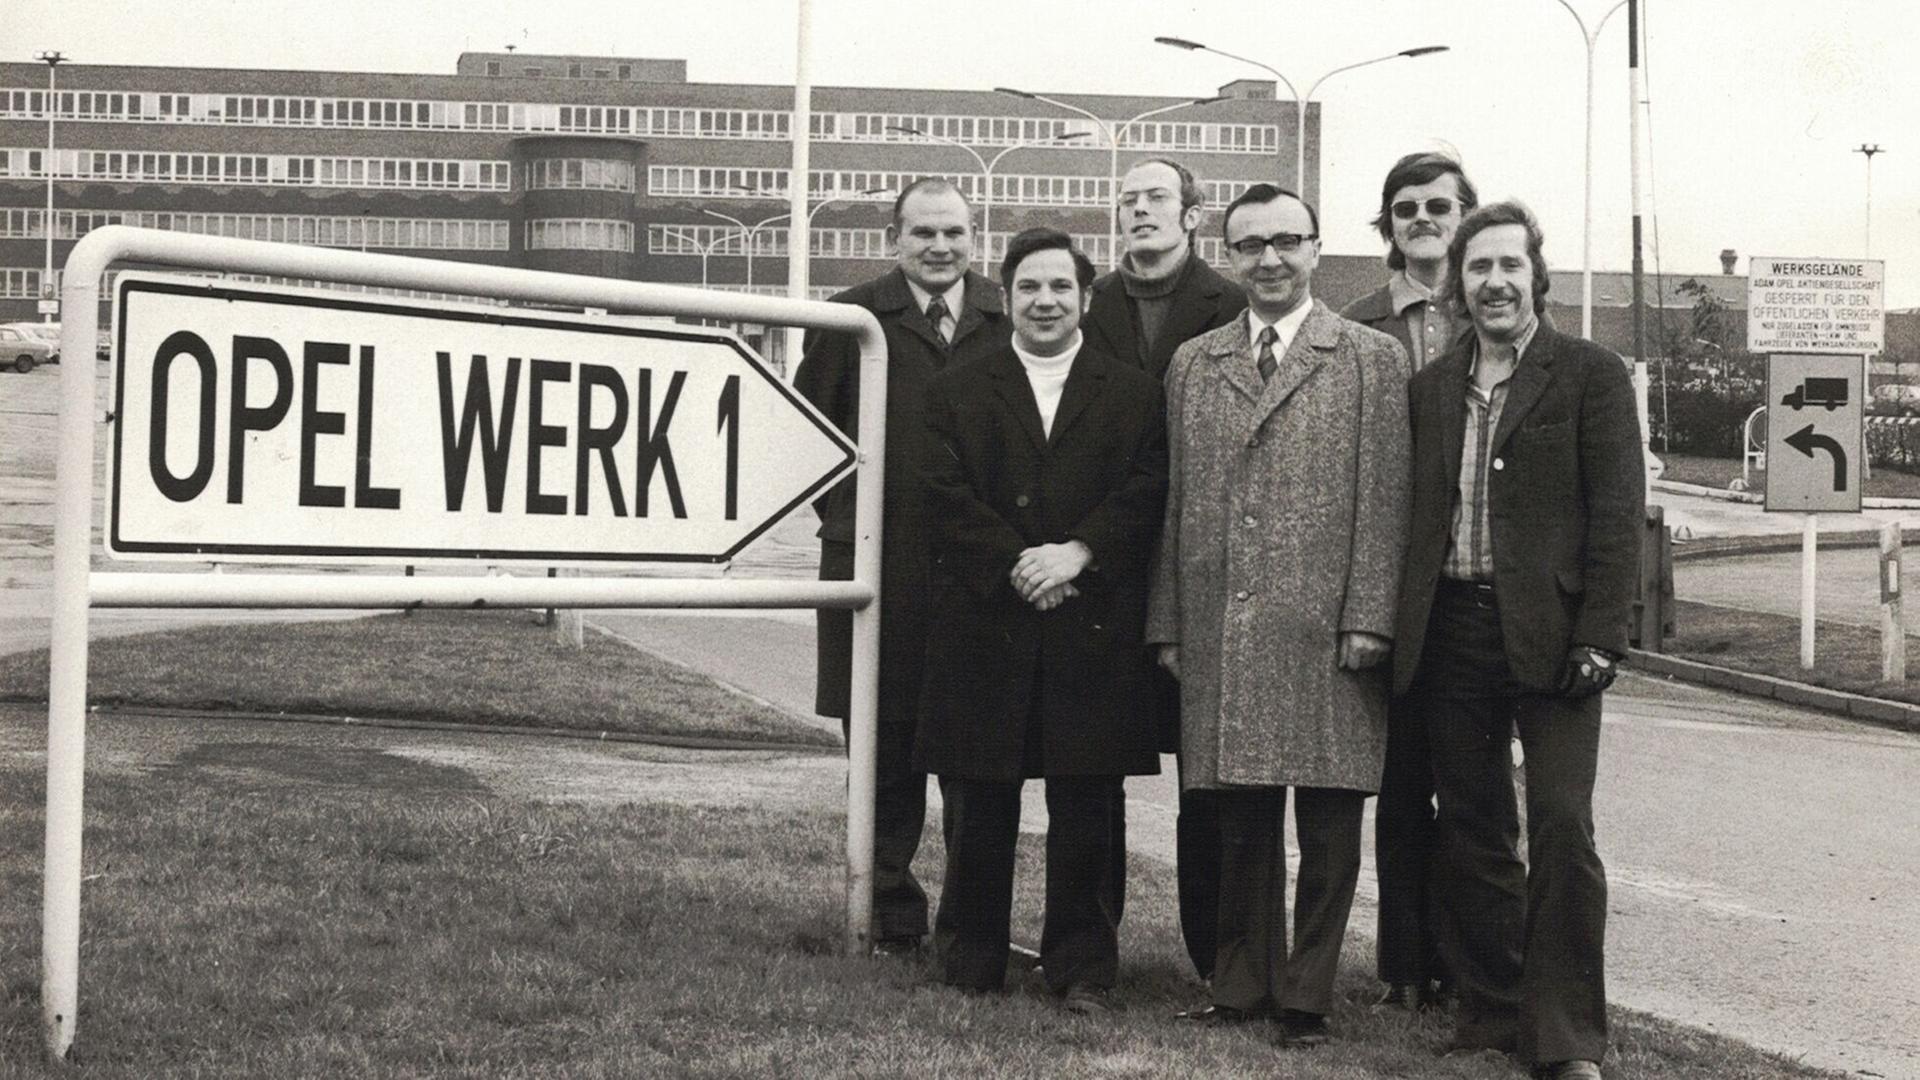 Das alte Foto zeigt sechs Vertreter der Arbeiterschaft von Opel Bochum vor dem Werksgebäude. Links im Bild weist ein Schild auf das Werk hin.